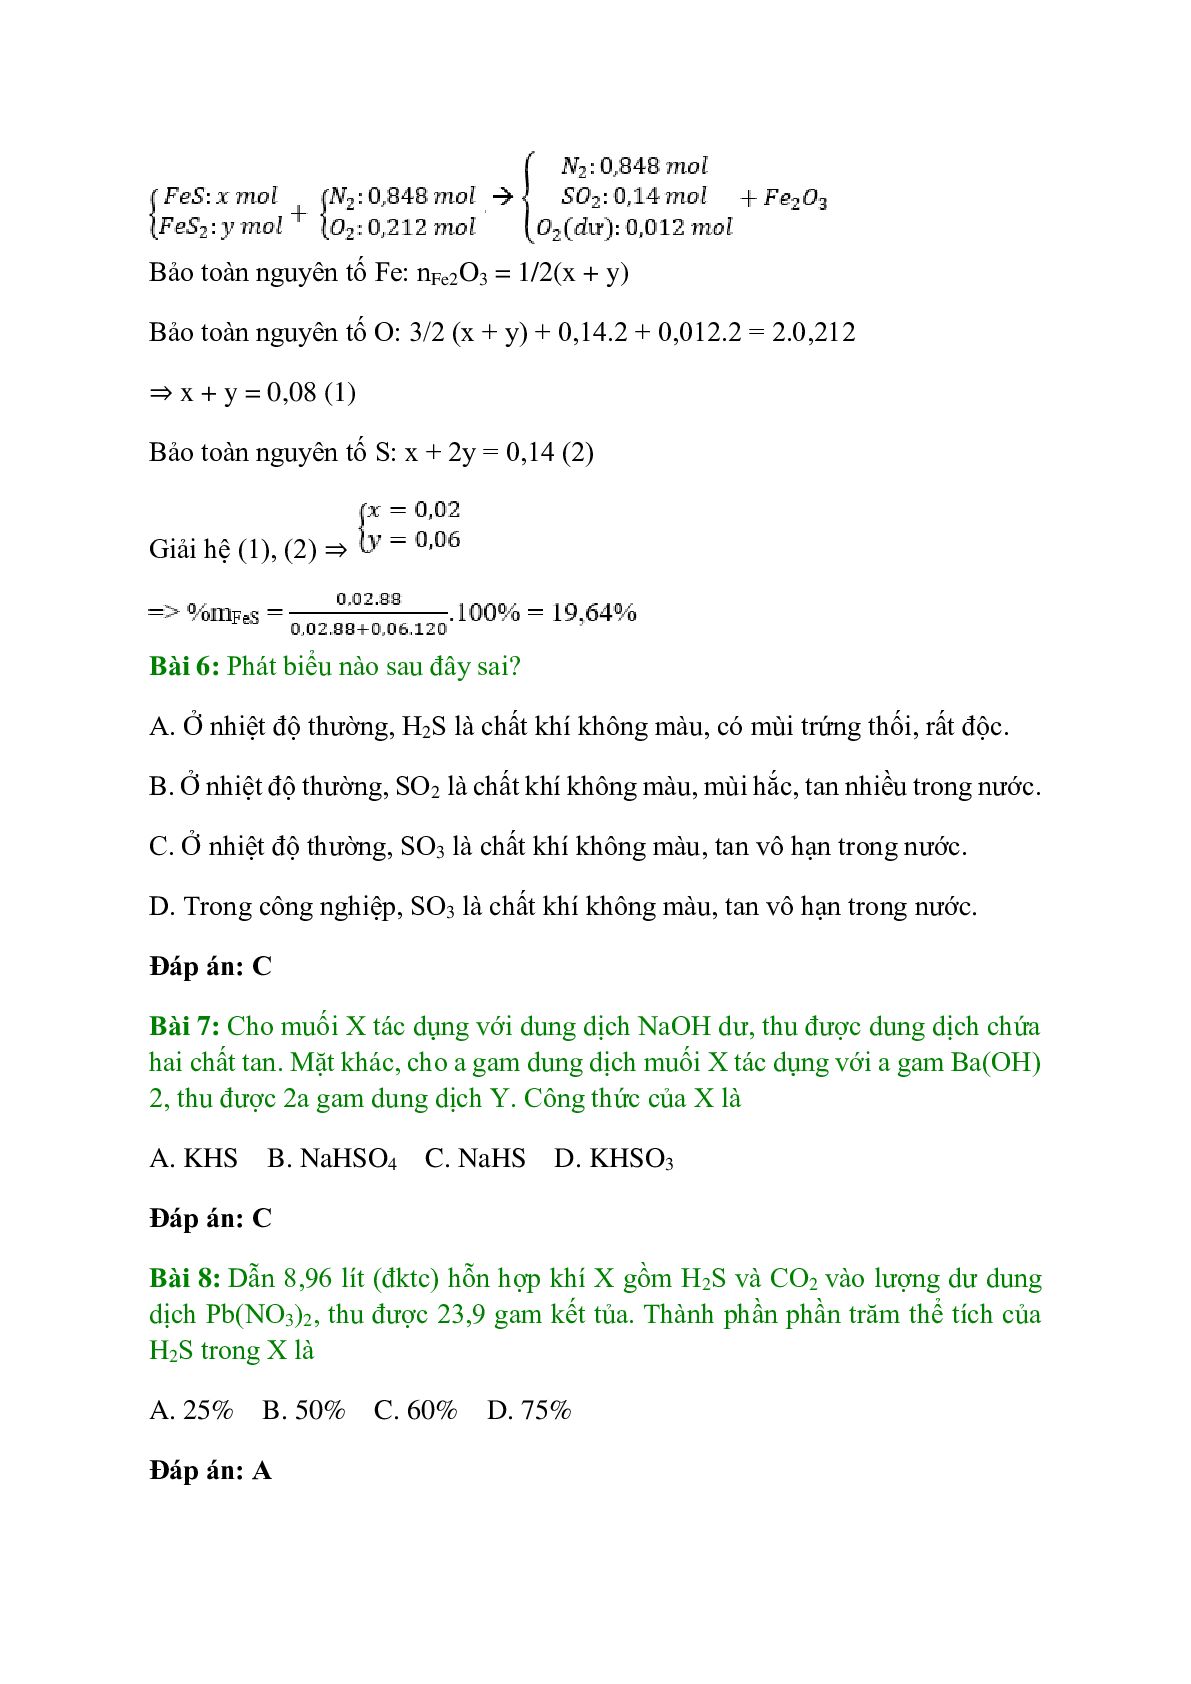 Trắc nghiệm Hiđro sunfua - Lưu huỳnh đioxit - Lưu huỳnh trioxit có đáp án - Hóa học 10 (trang 3)